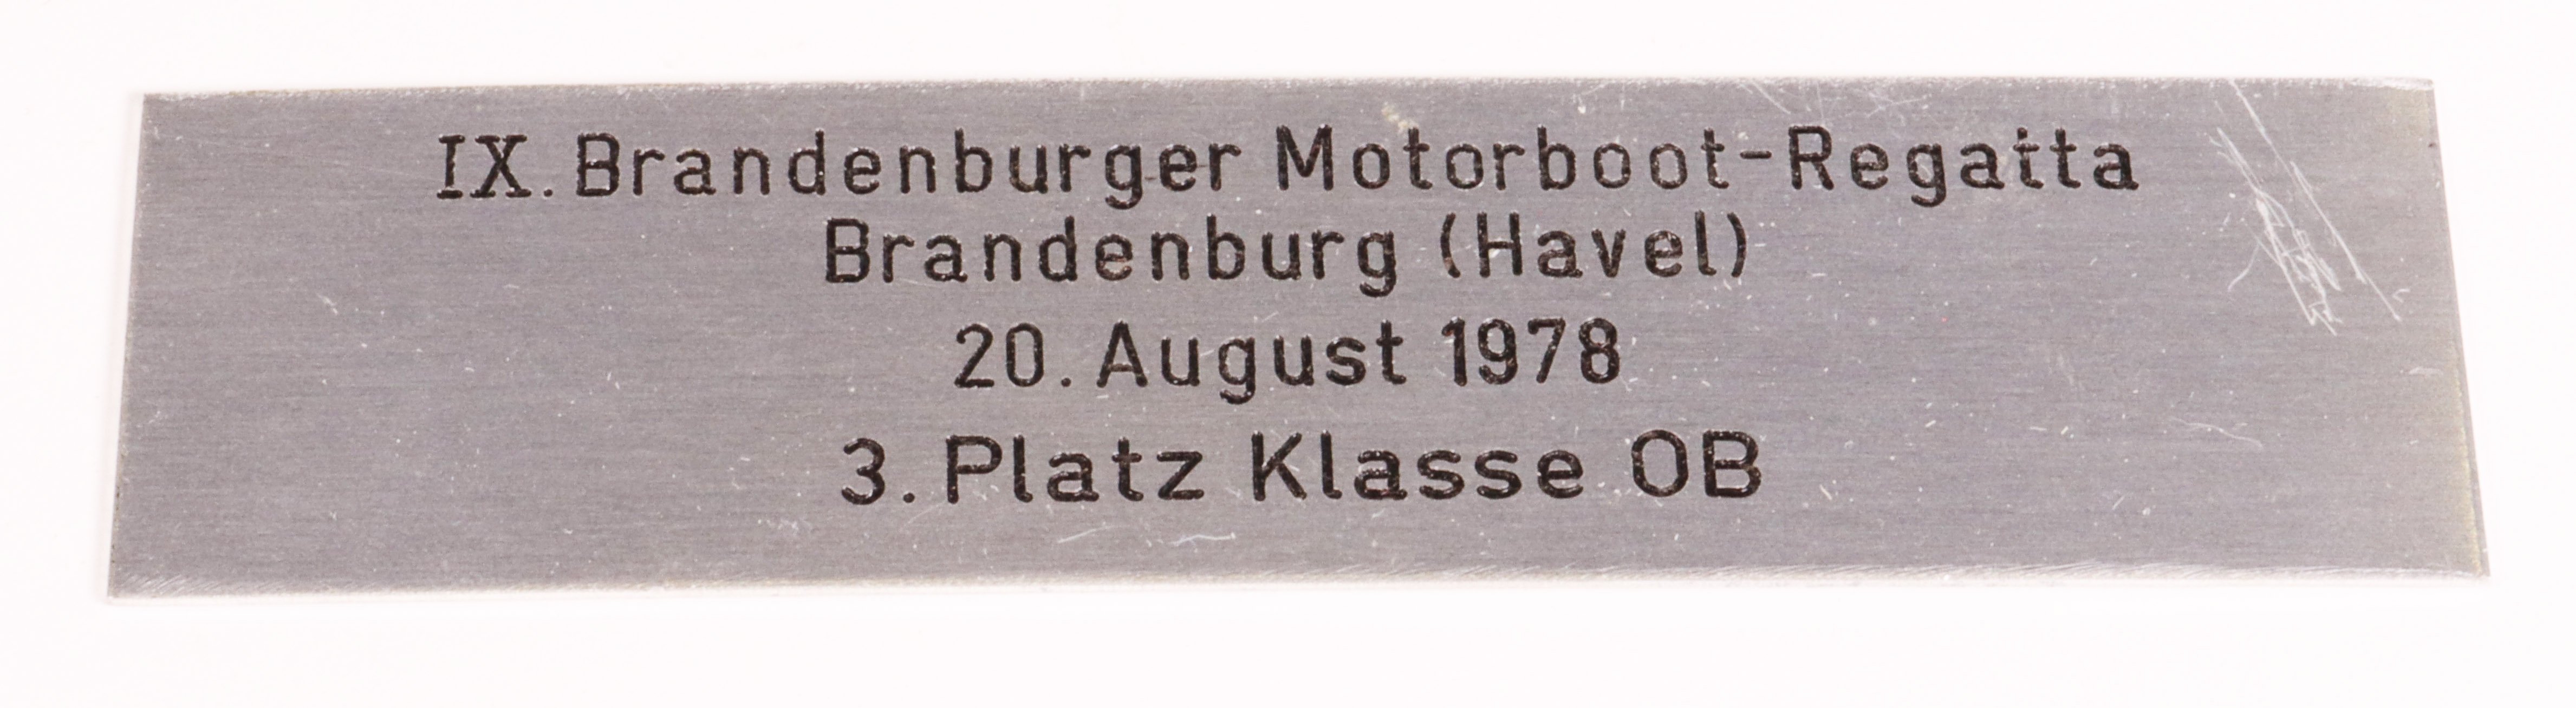 Pokalschild der 9. Brandenburger Motorbootregatta Brandenburg (Havel) 1978 (Museum für Stadt und Technik Ludwigsfelde CC BY-NC-SA)